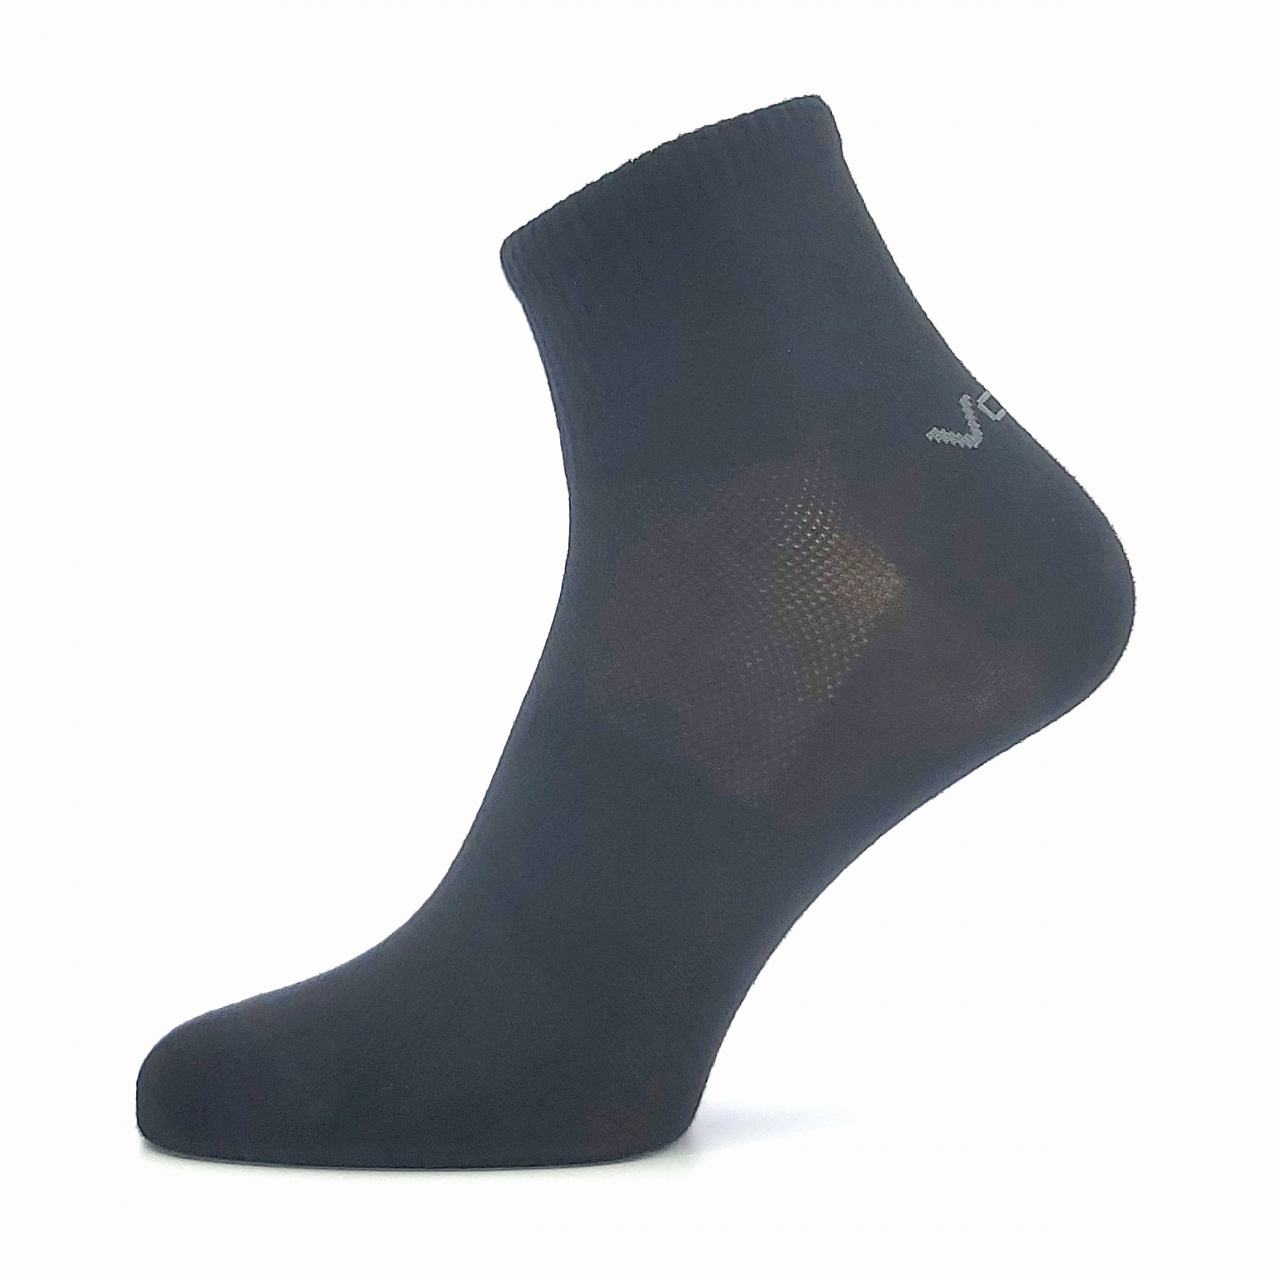 Ponožky unisex klasické Voxx Metym - černé, 43-46